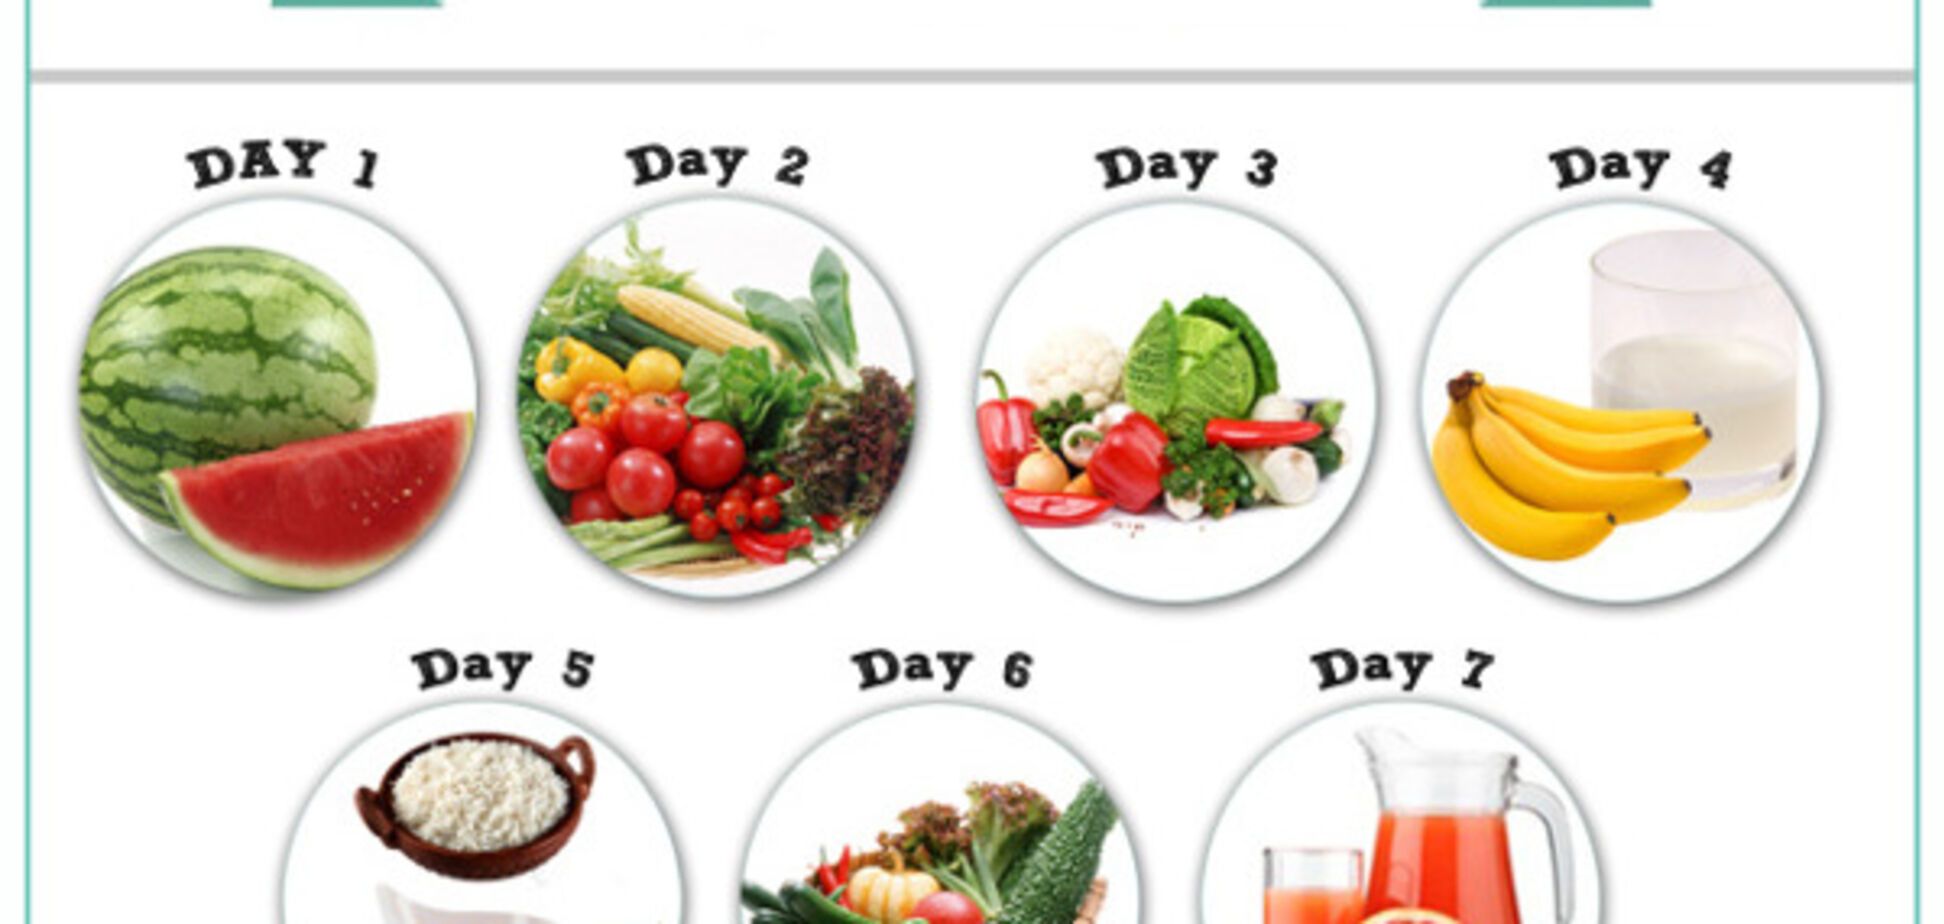 Семь килограмм за семь дней: диета в картинках